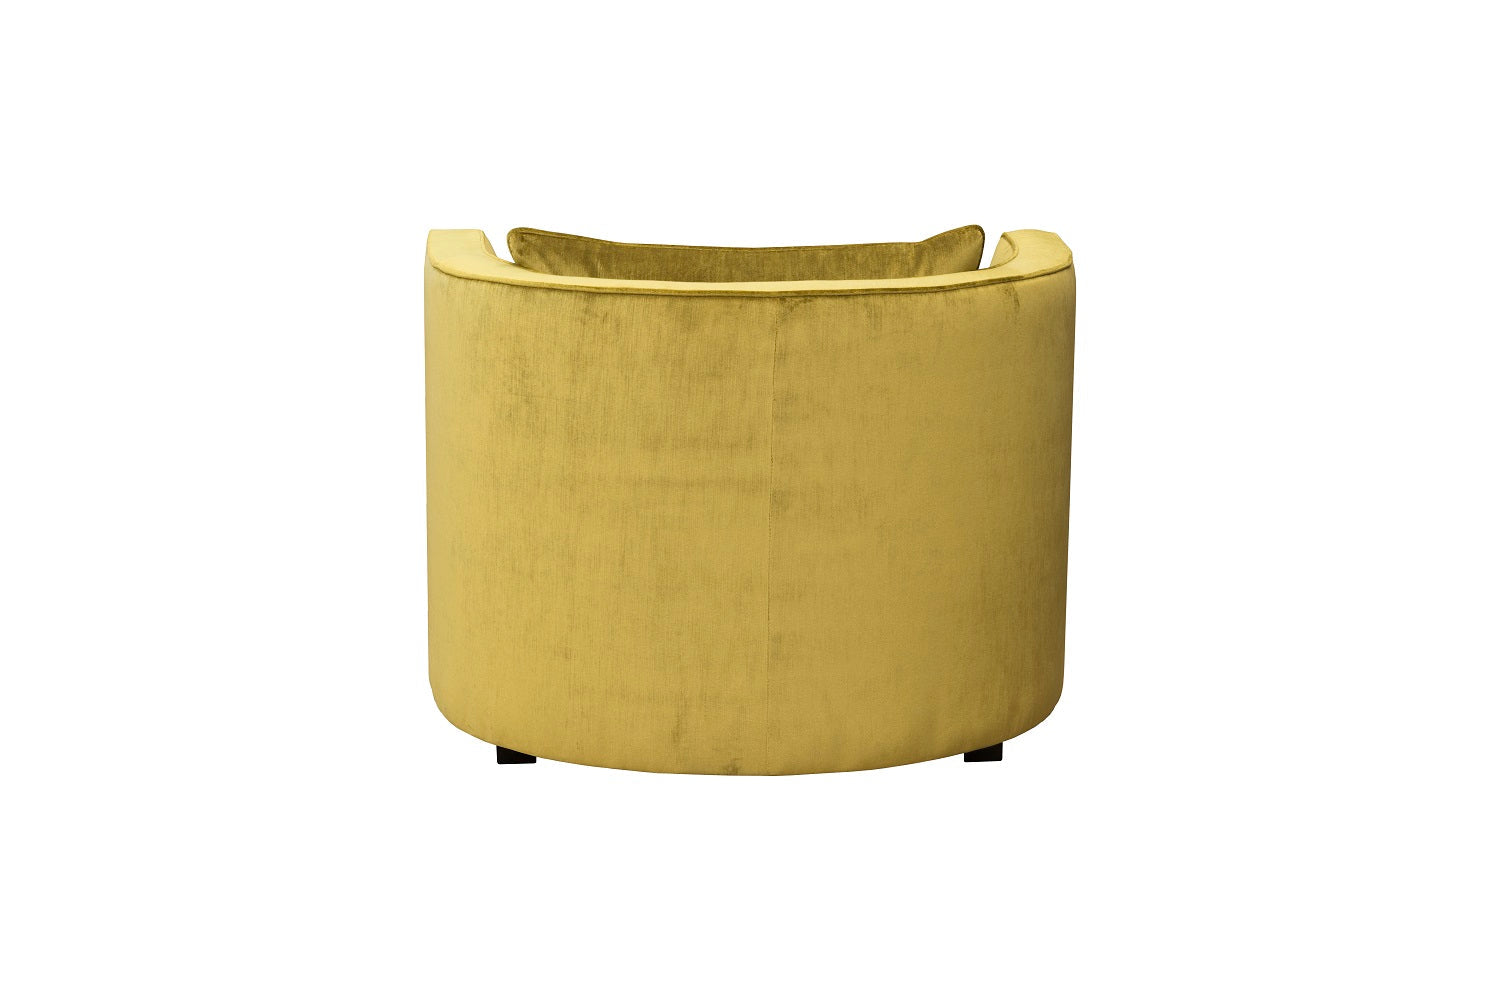 Moderner Halbrunder Sessel aus Stoff mit Kissen | Modell DAVIDE